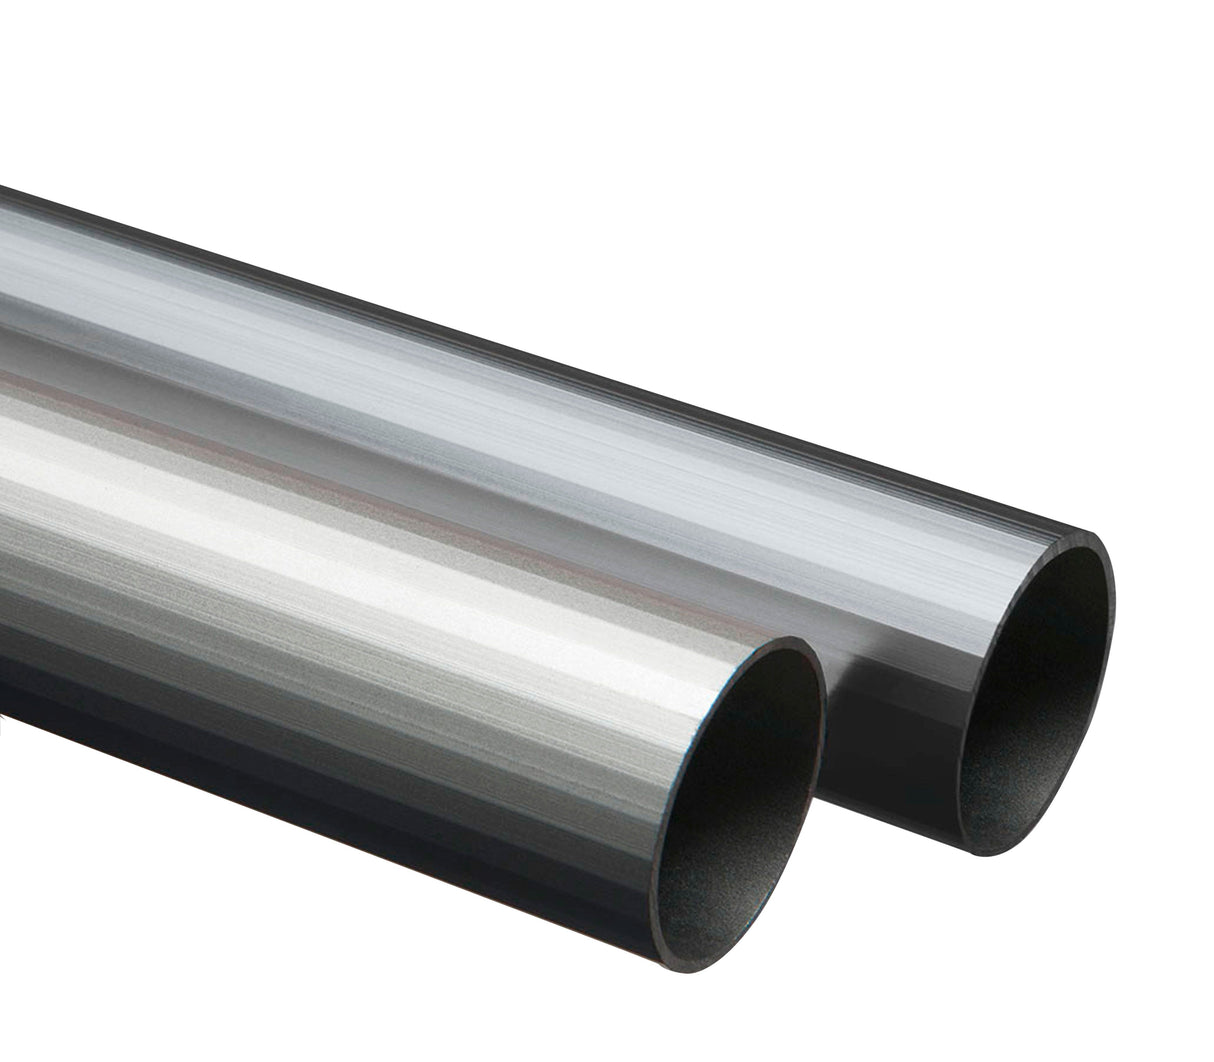 Tubo redondo de aluminio 19mm x 2m Tauro